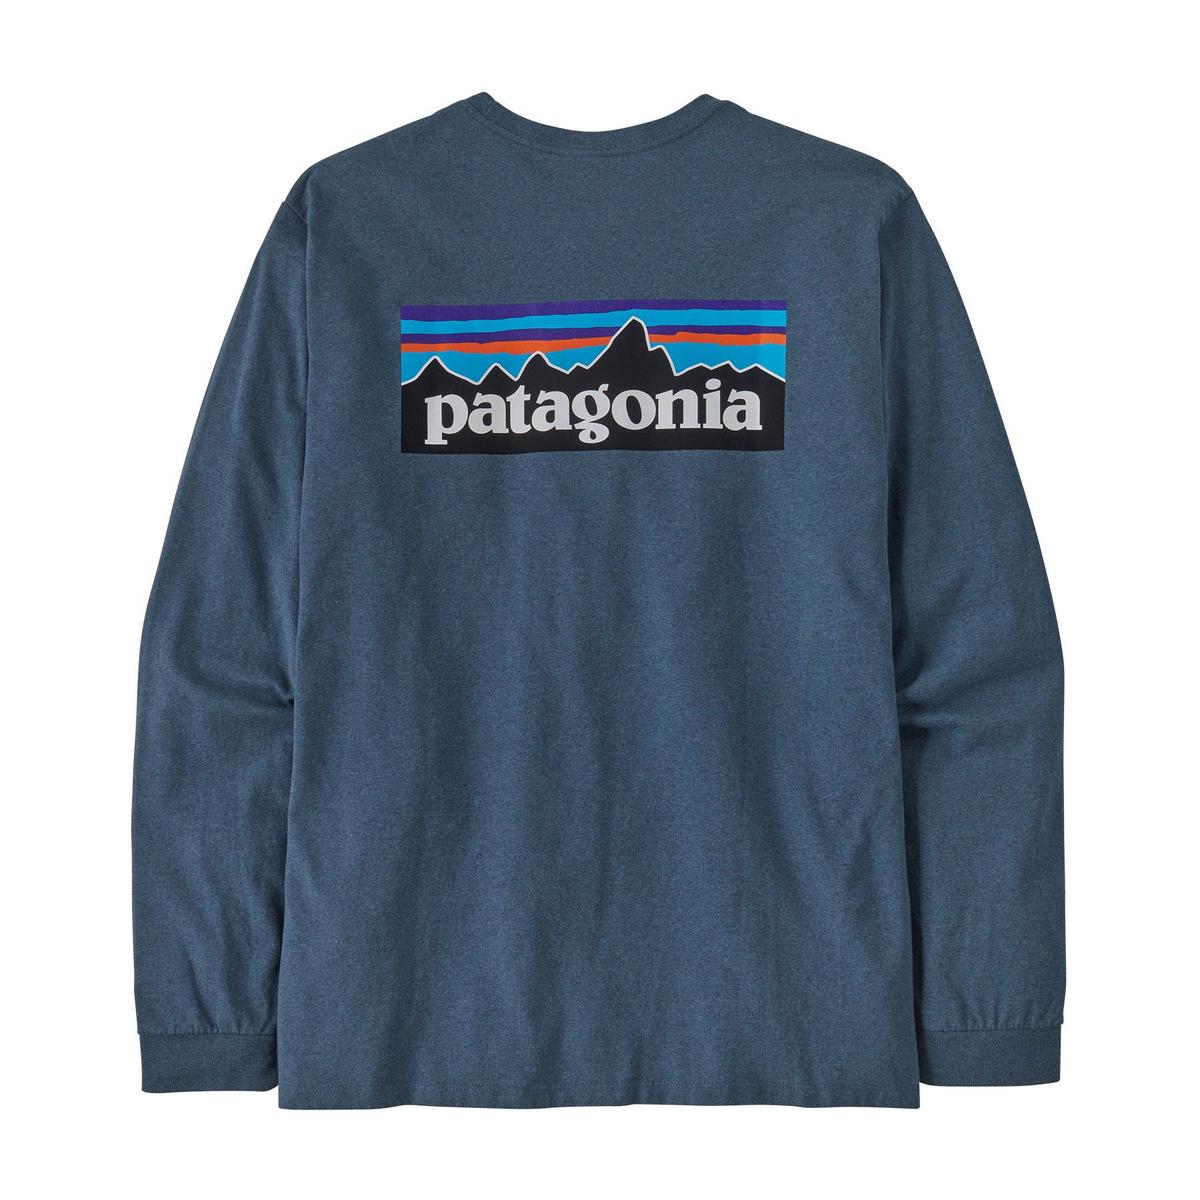 Patagonia Men's Long-Sleeved P6 Logo Responsibilitee - Blue